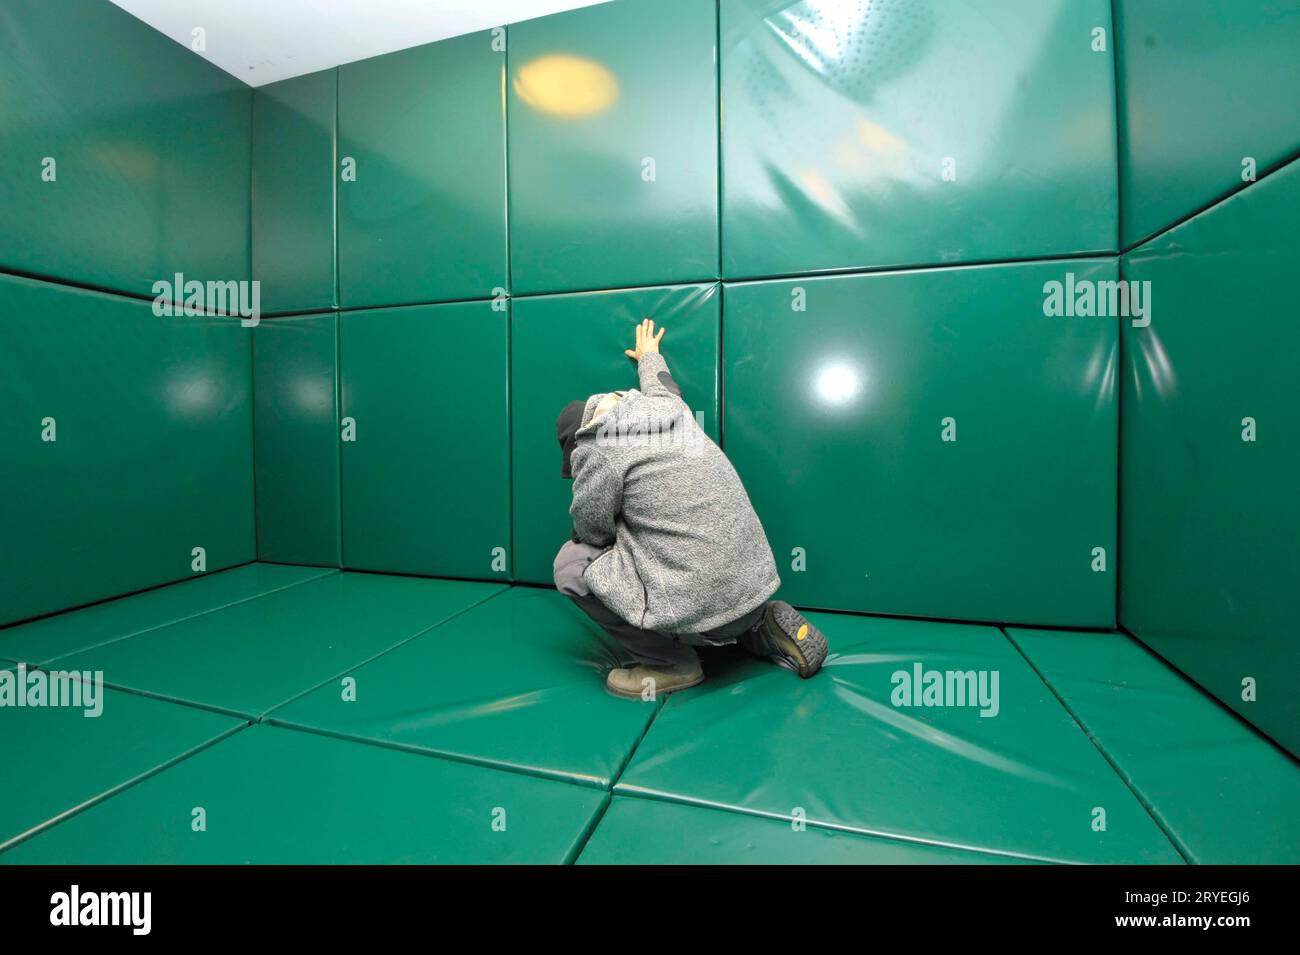 Homme agenouillé dans une cellule rembourrée verte Banque D'Images